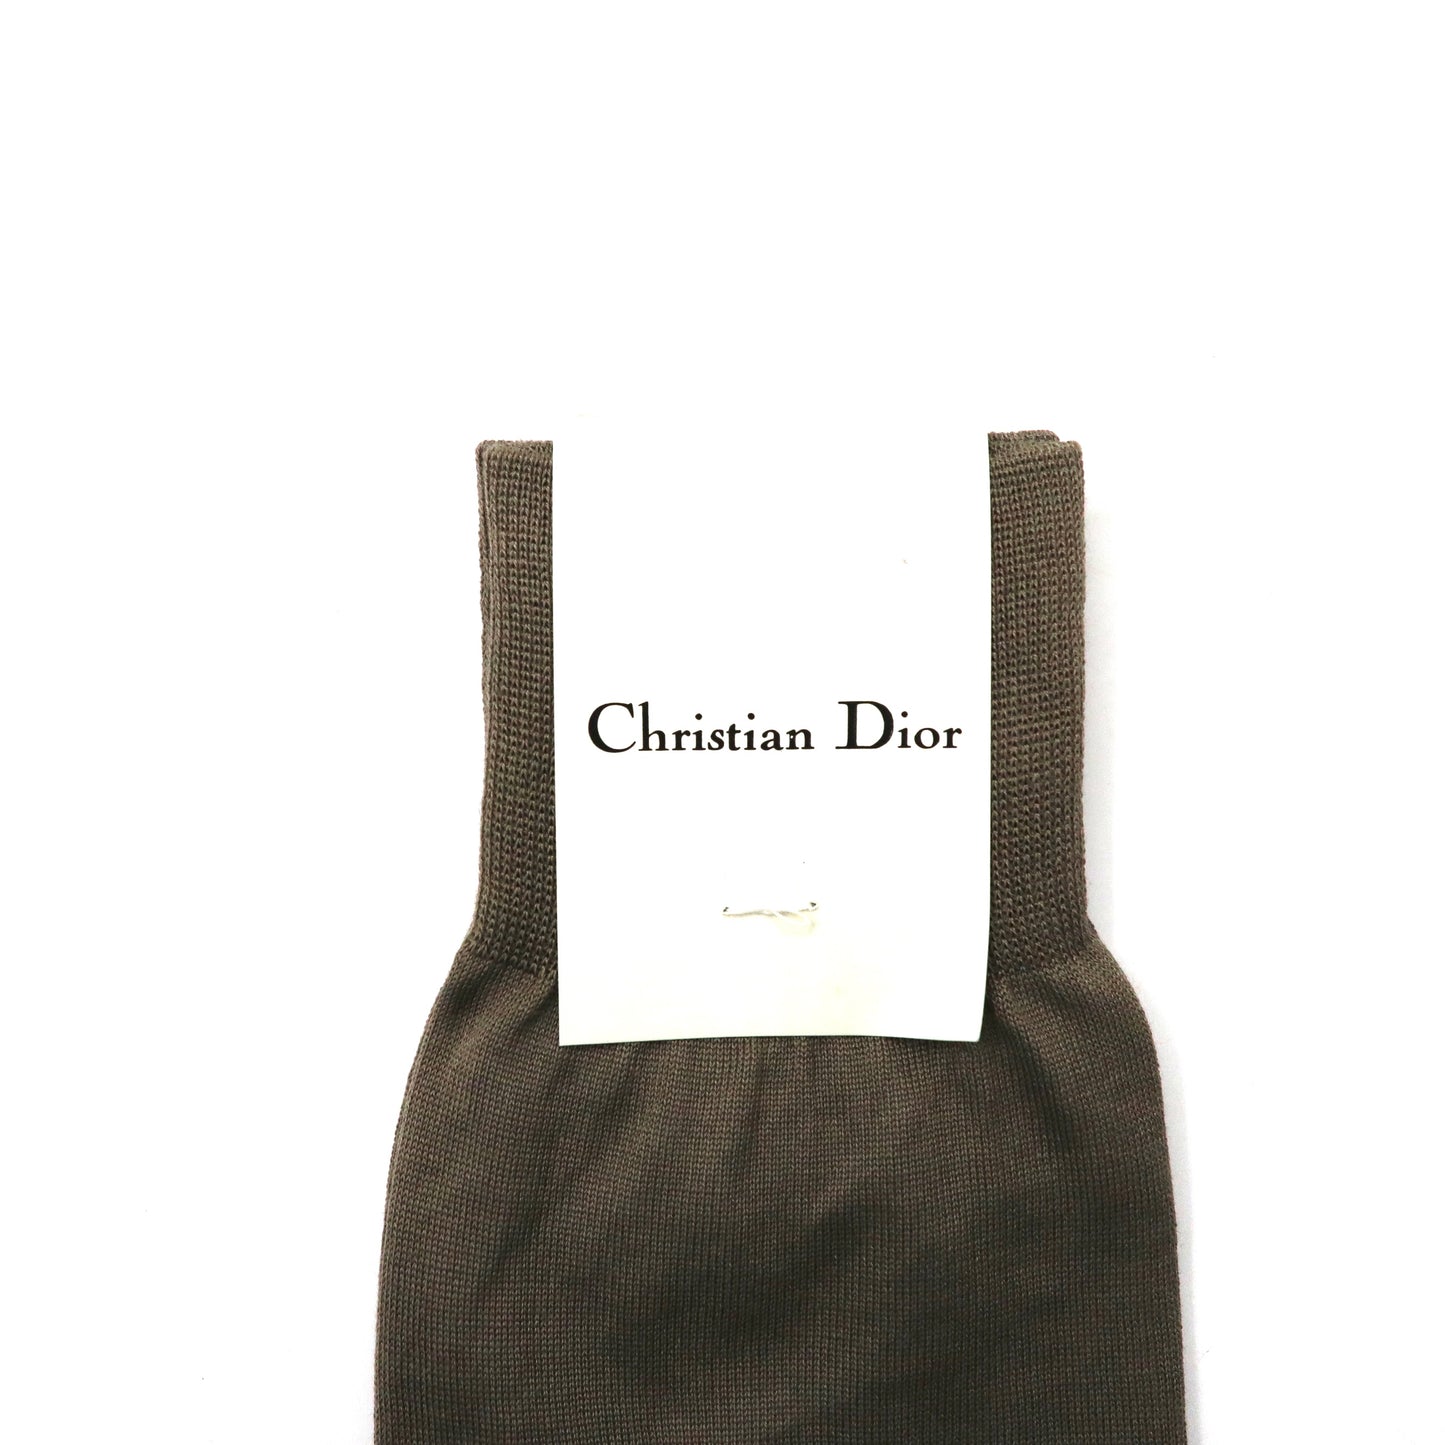 Christian Dior 靴下 ベージュ コットン ワンポイントロゴ刺繍 日本製 未使用品